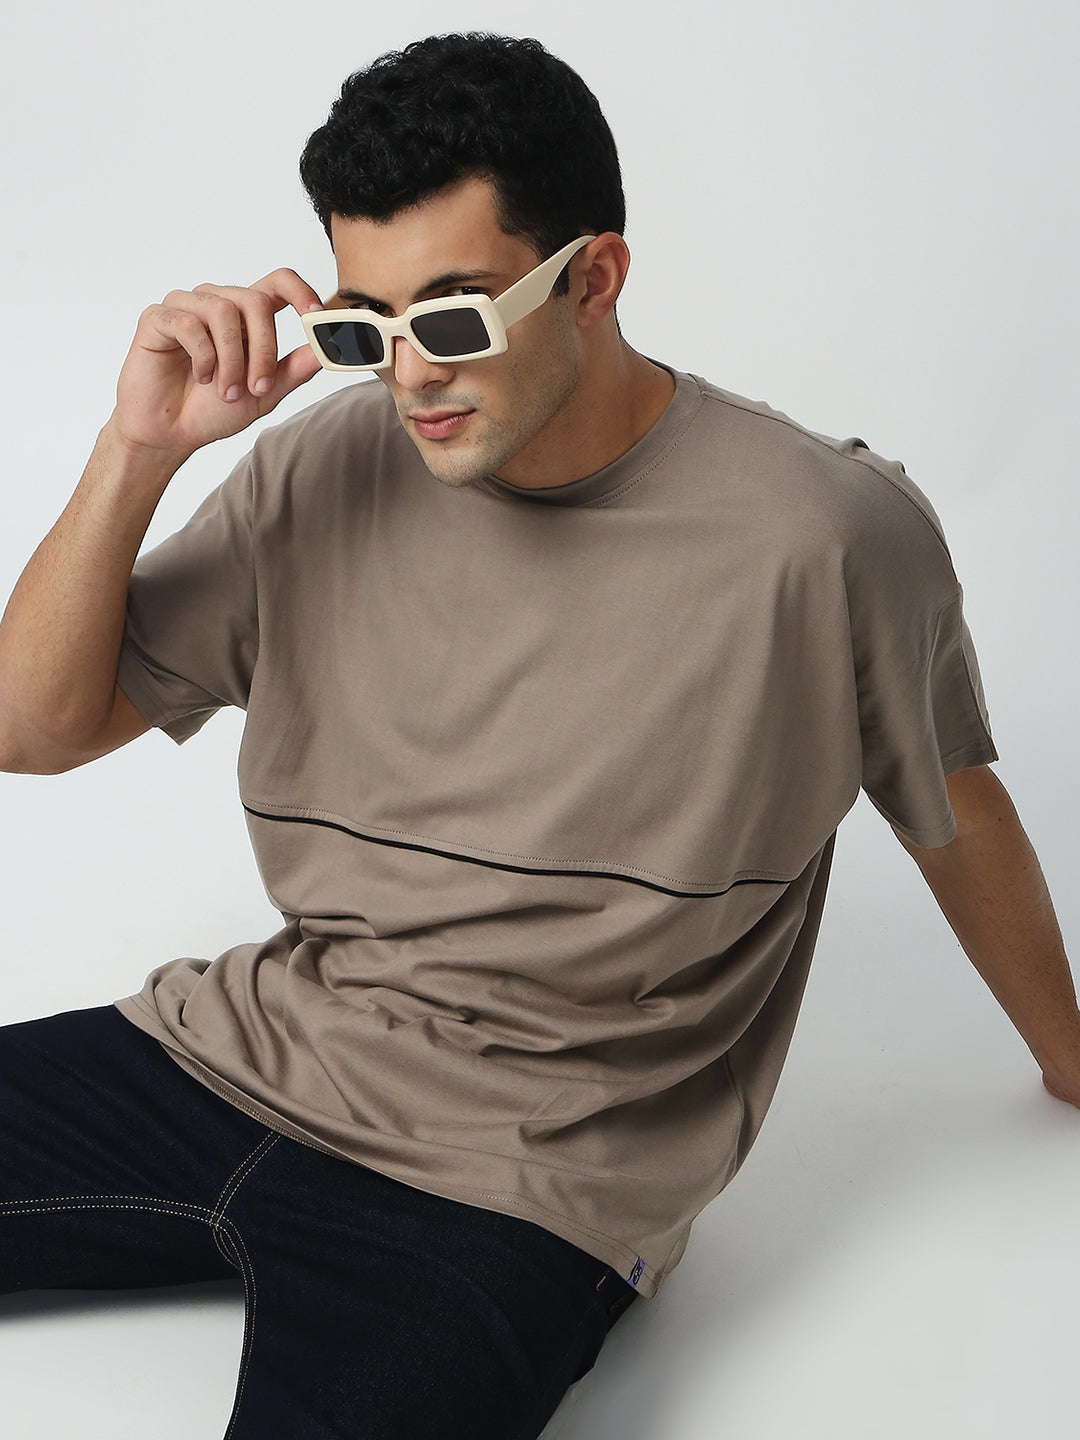 Buy Blamblack Men's Oversize Beige Color Round Neck Plain T-Shirt